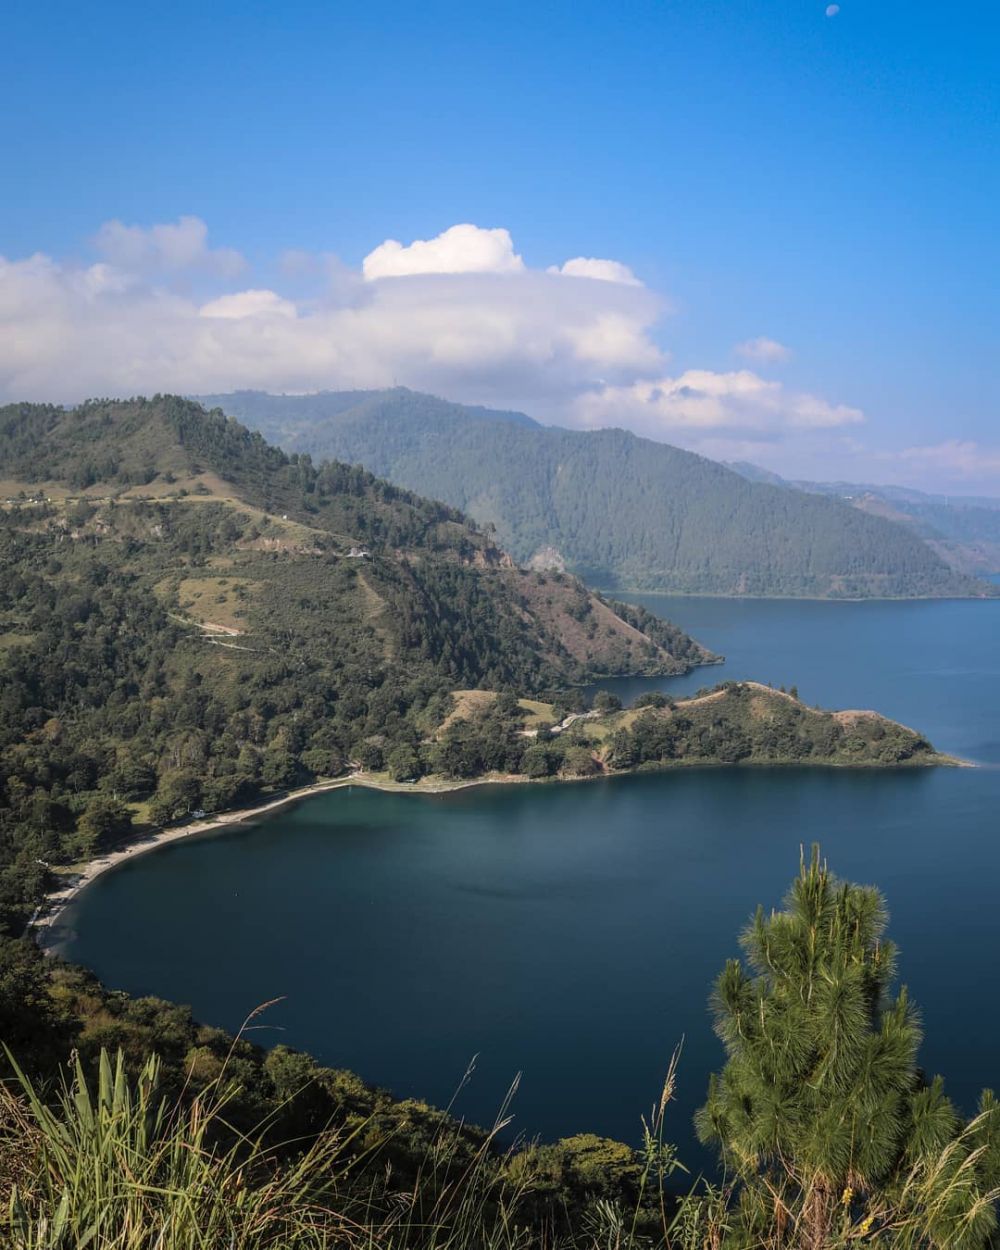 Berkunjung ke Danau Toba, ini 8 destinasi wisata yang wajib dikunjungi